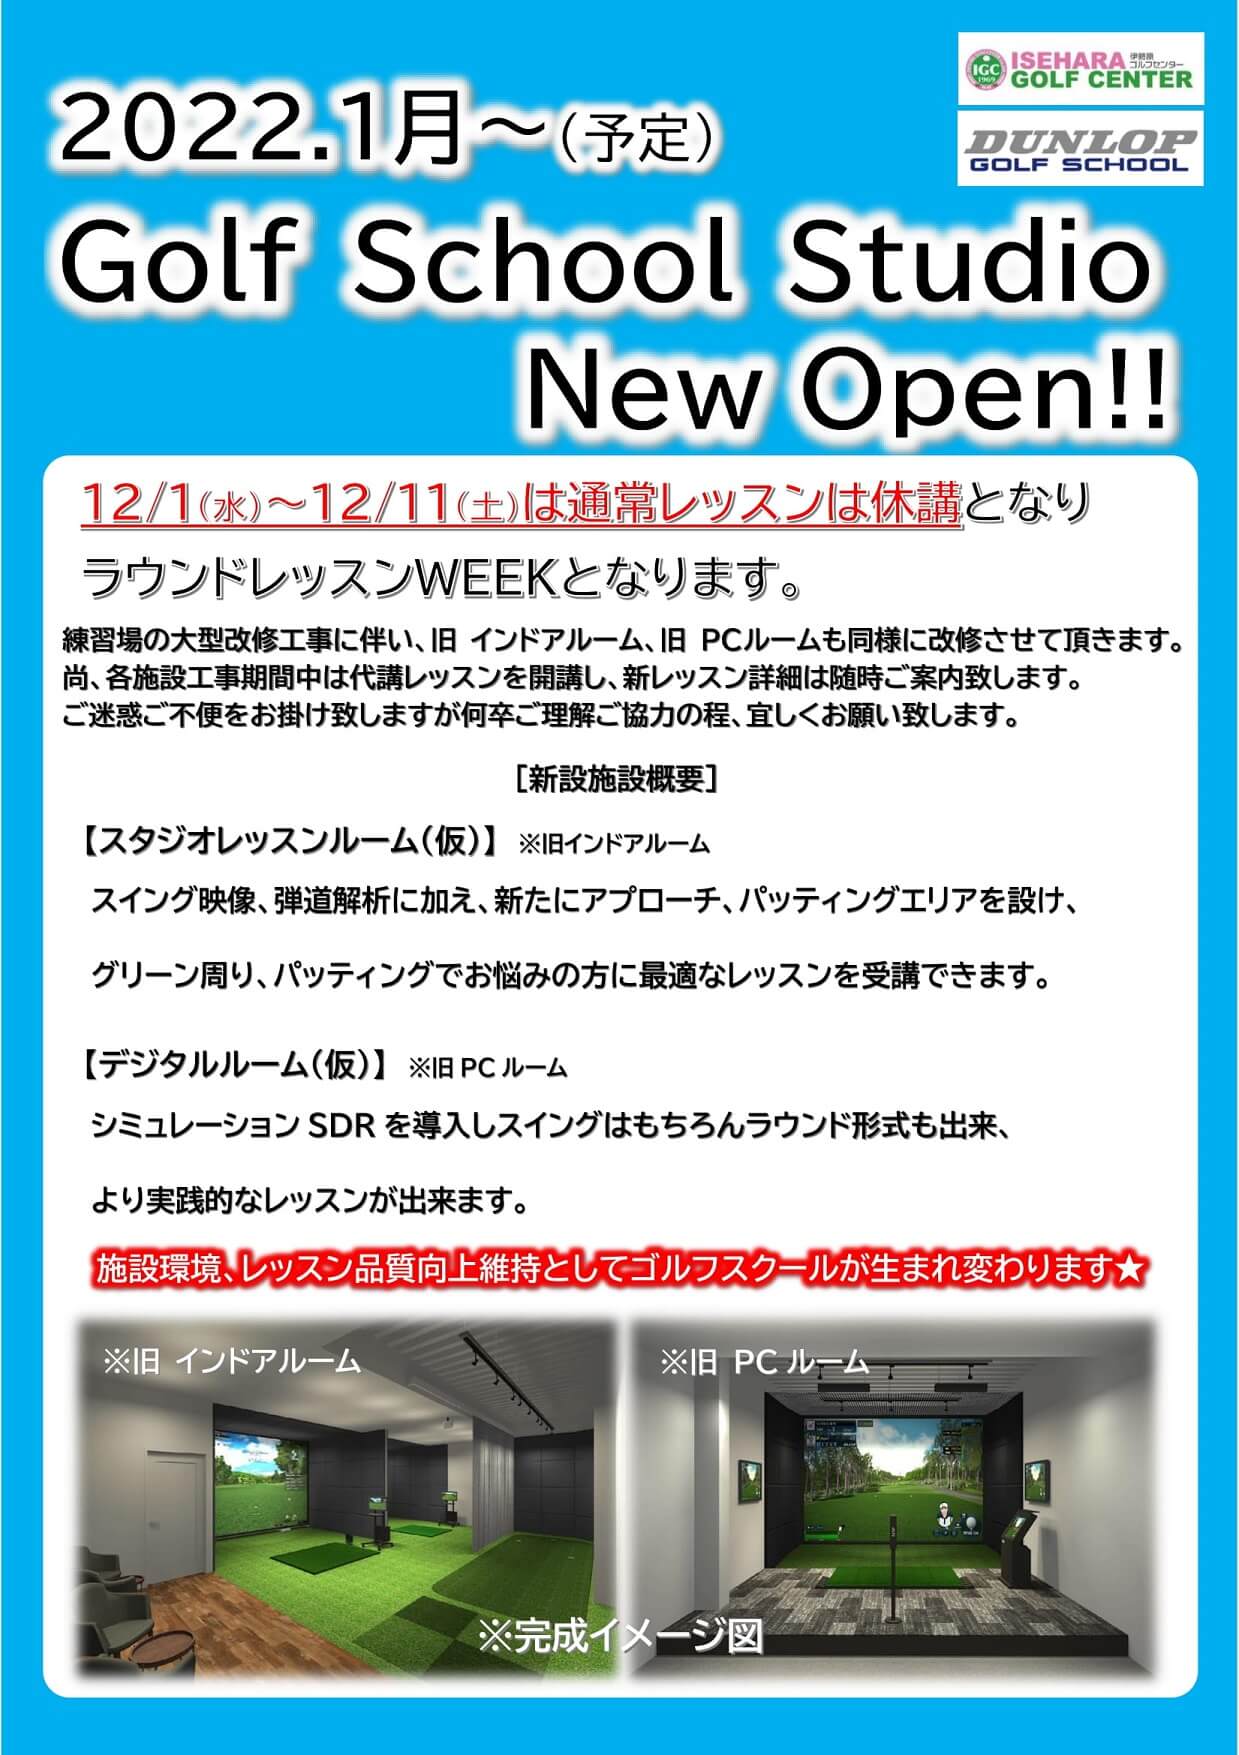 2022年1月Golf School Studio New OPEN!(予定)